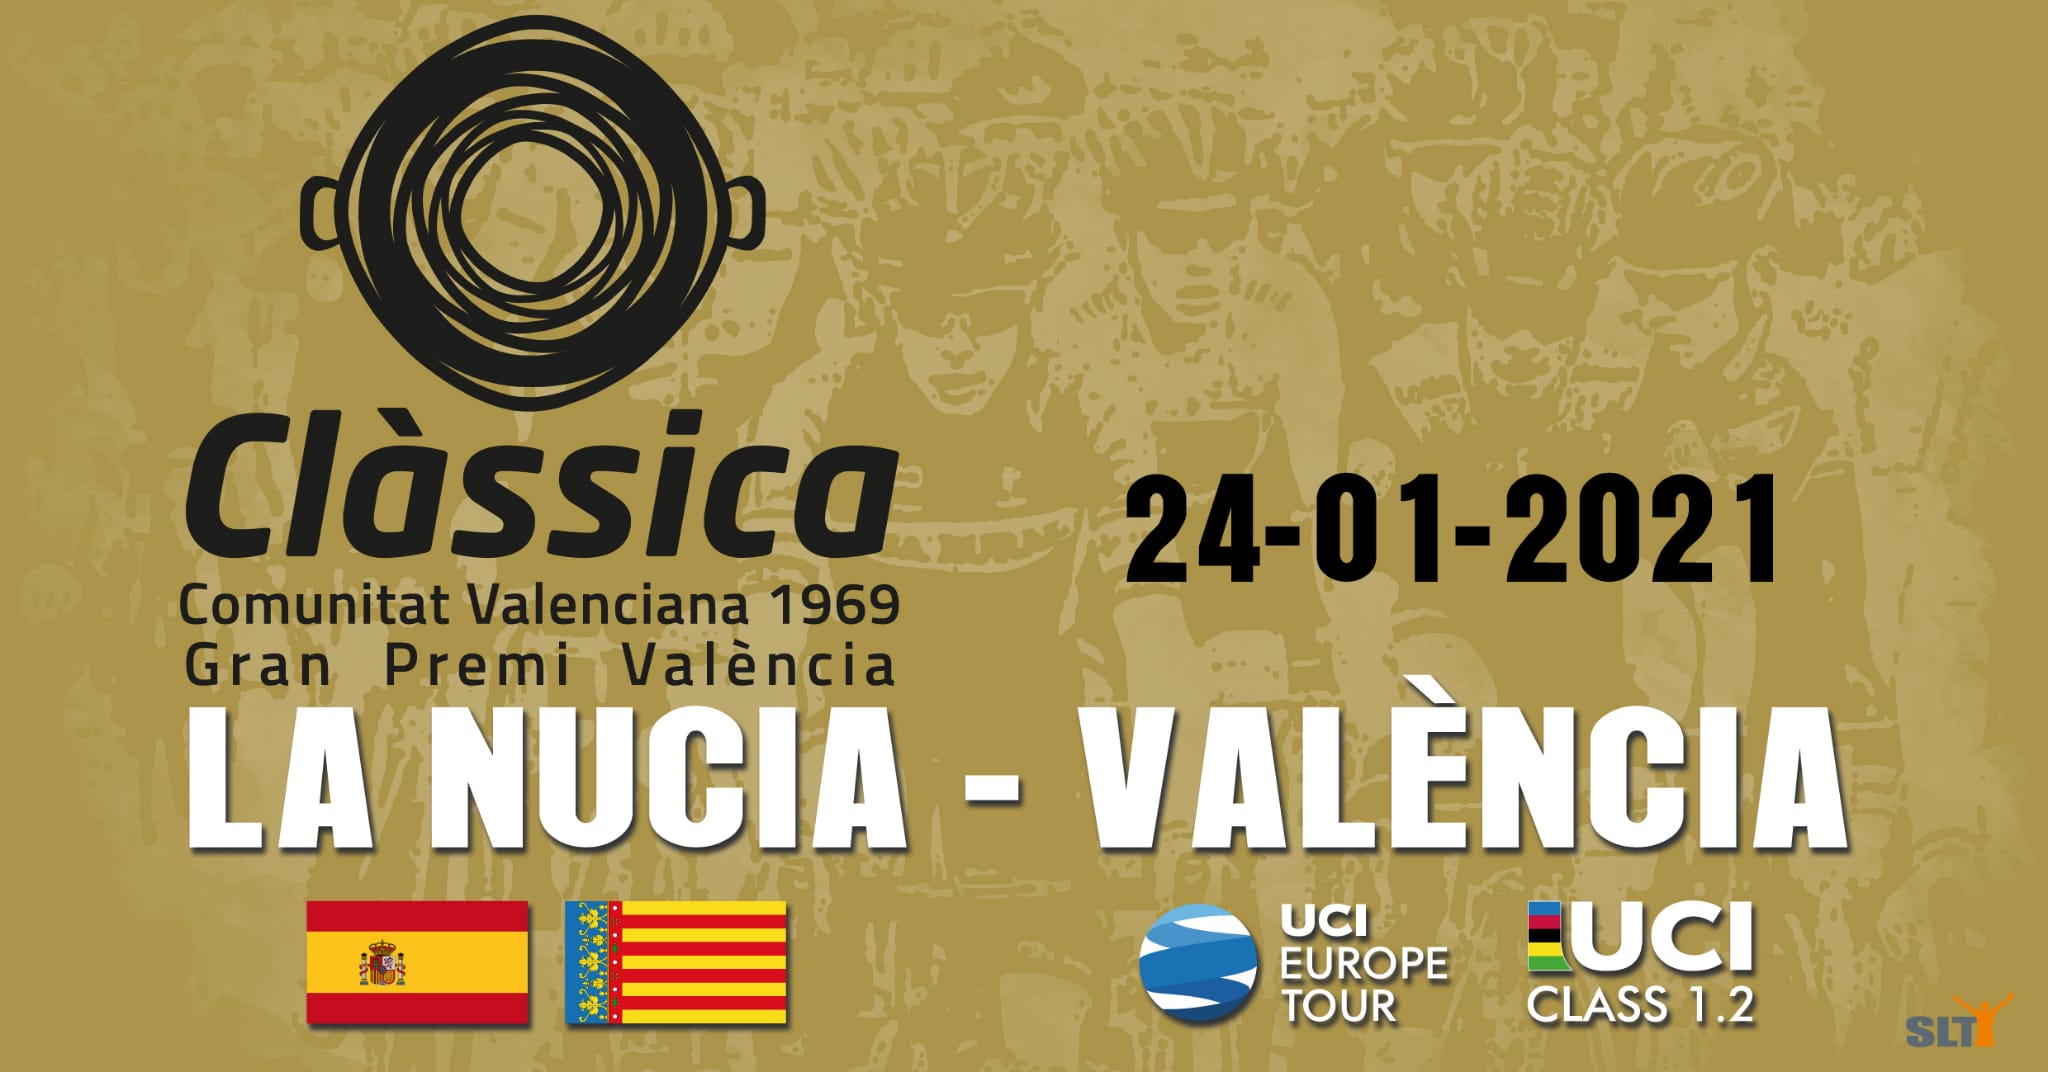 Clàssica Comunitat Valenciana 1969 - Gran Premi València